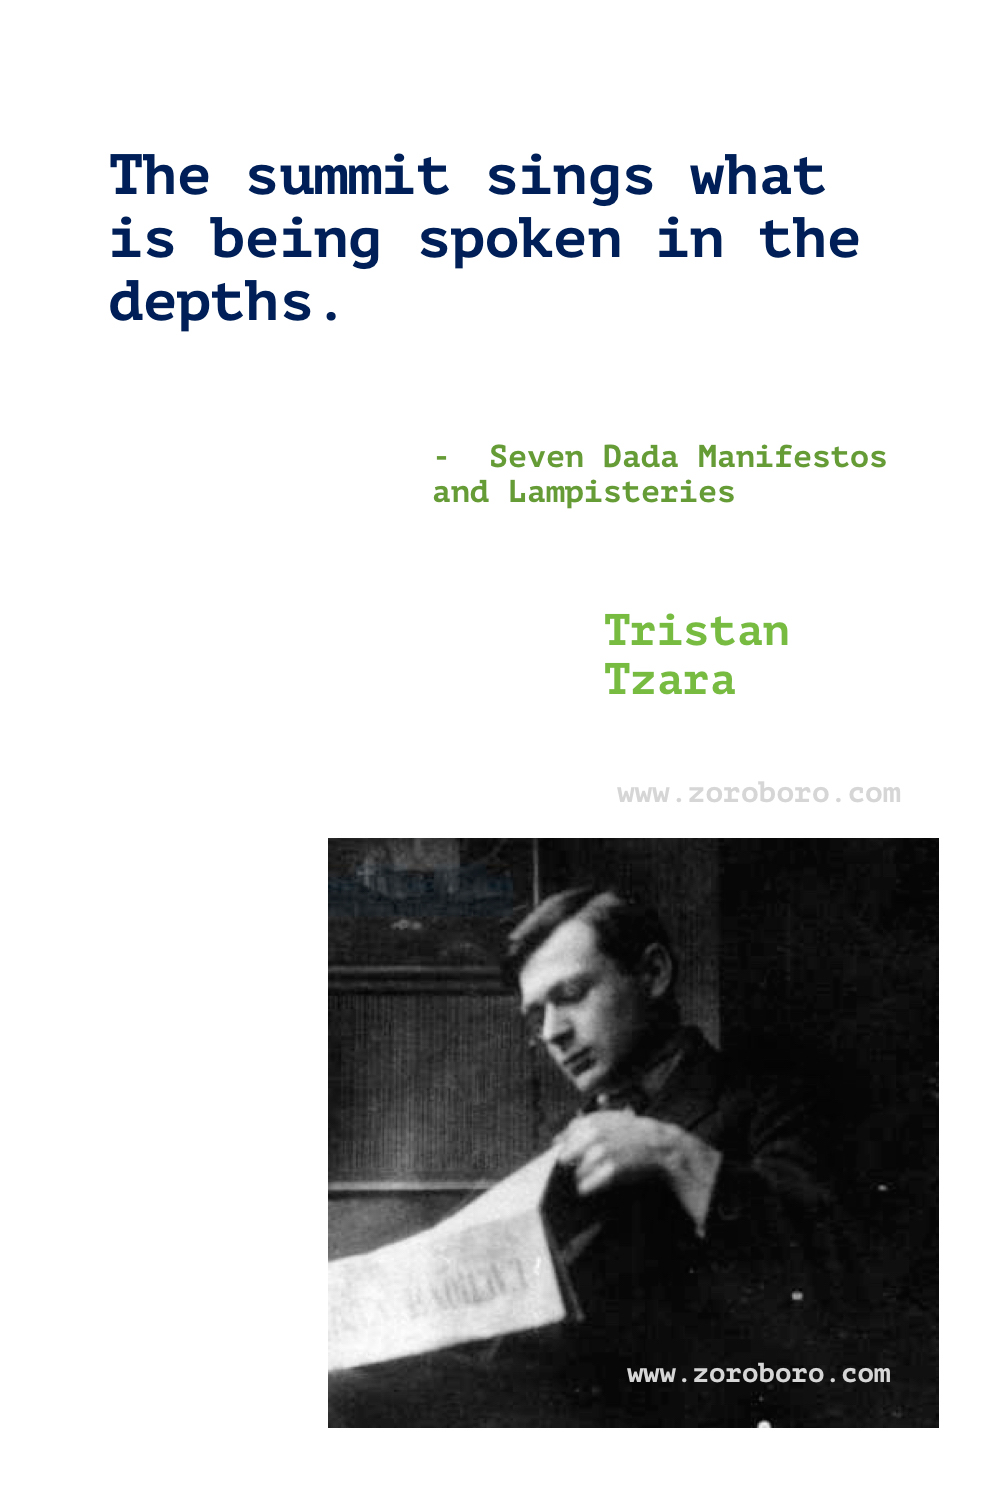 Tristan Tzara Quotes. Tristan Tzara Poems. Tristan Tzara Dada Art. Tristan Tzara Books Poems. Tristan Tzara Quotes. Seven Dada Manifestos and Lampisteries.